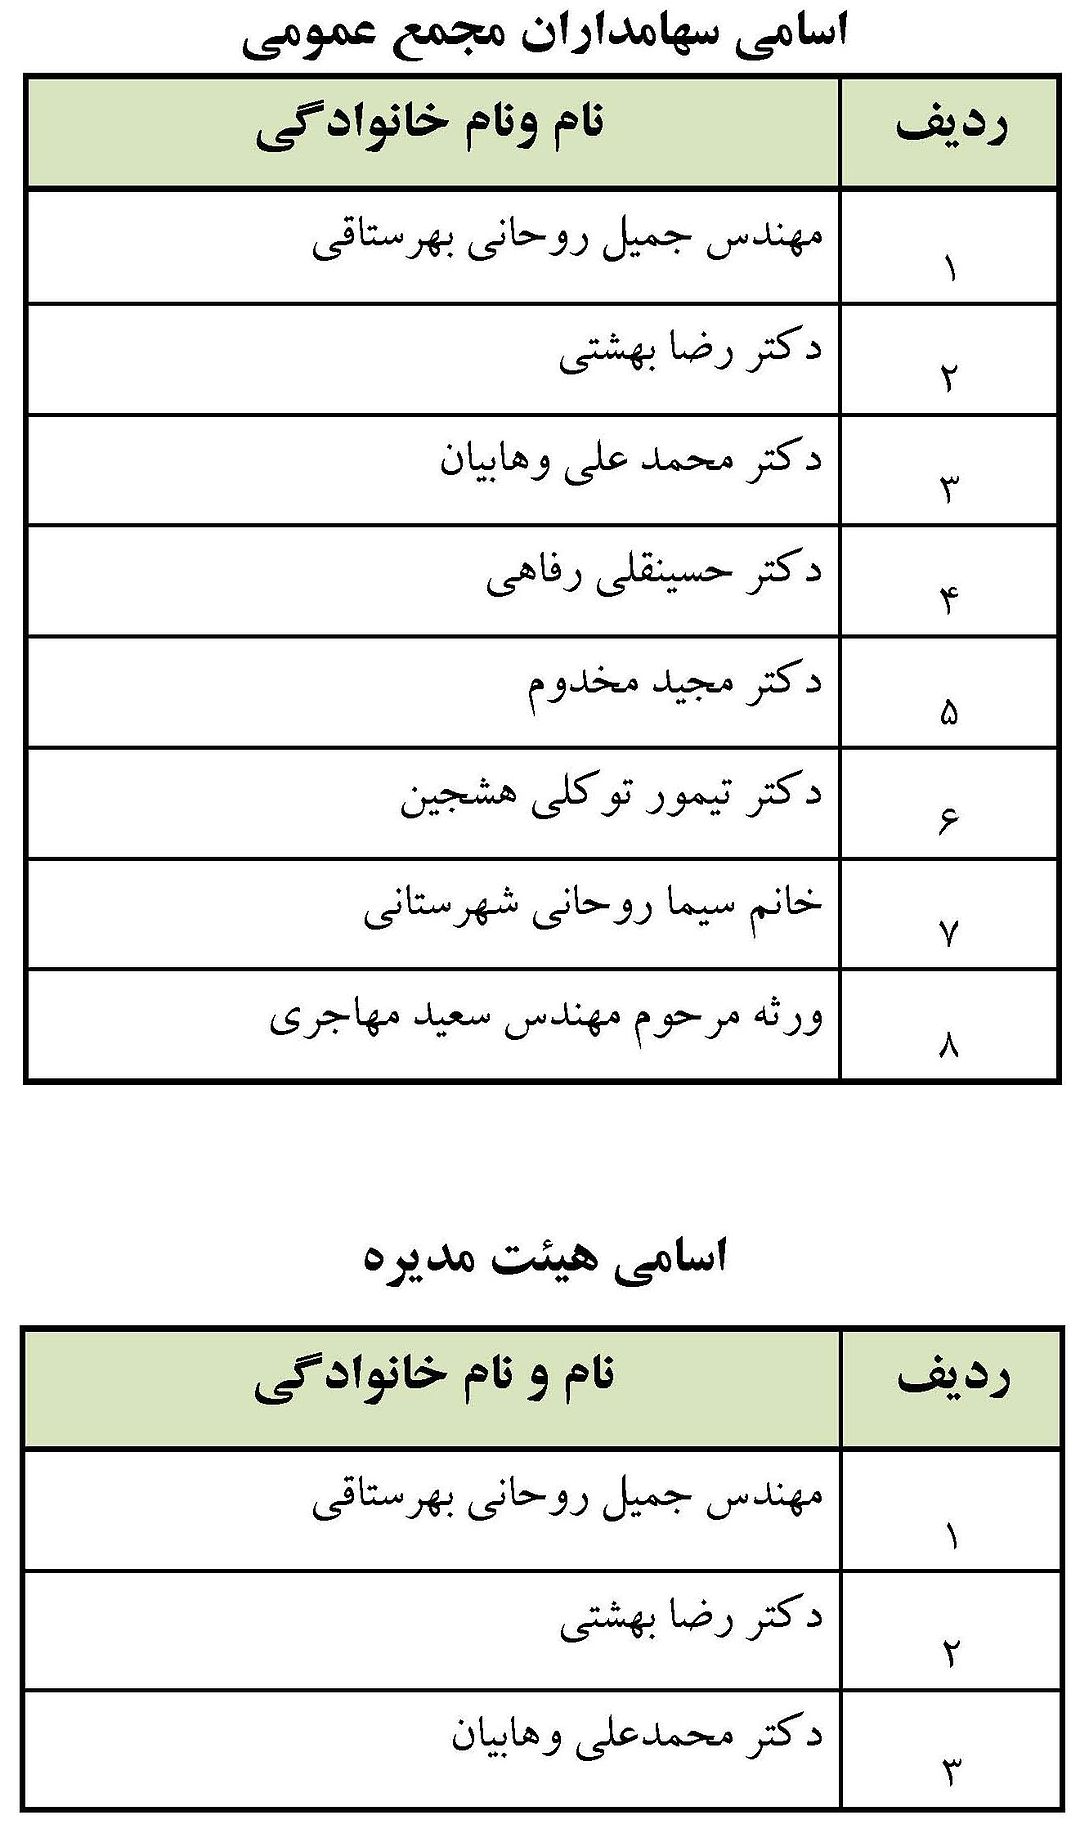 لیست سهامداران شرکت مهندسین مشاور جامع ایران